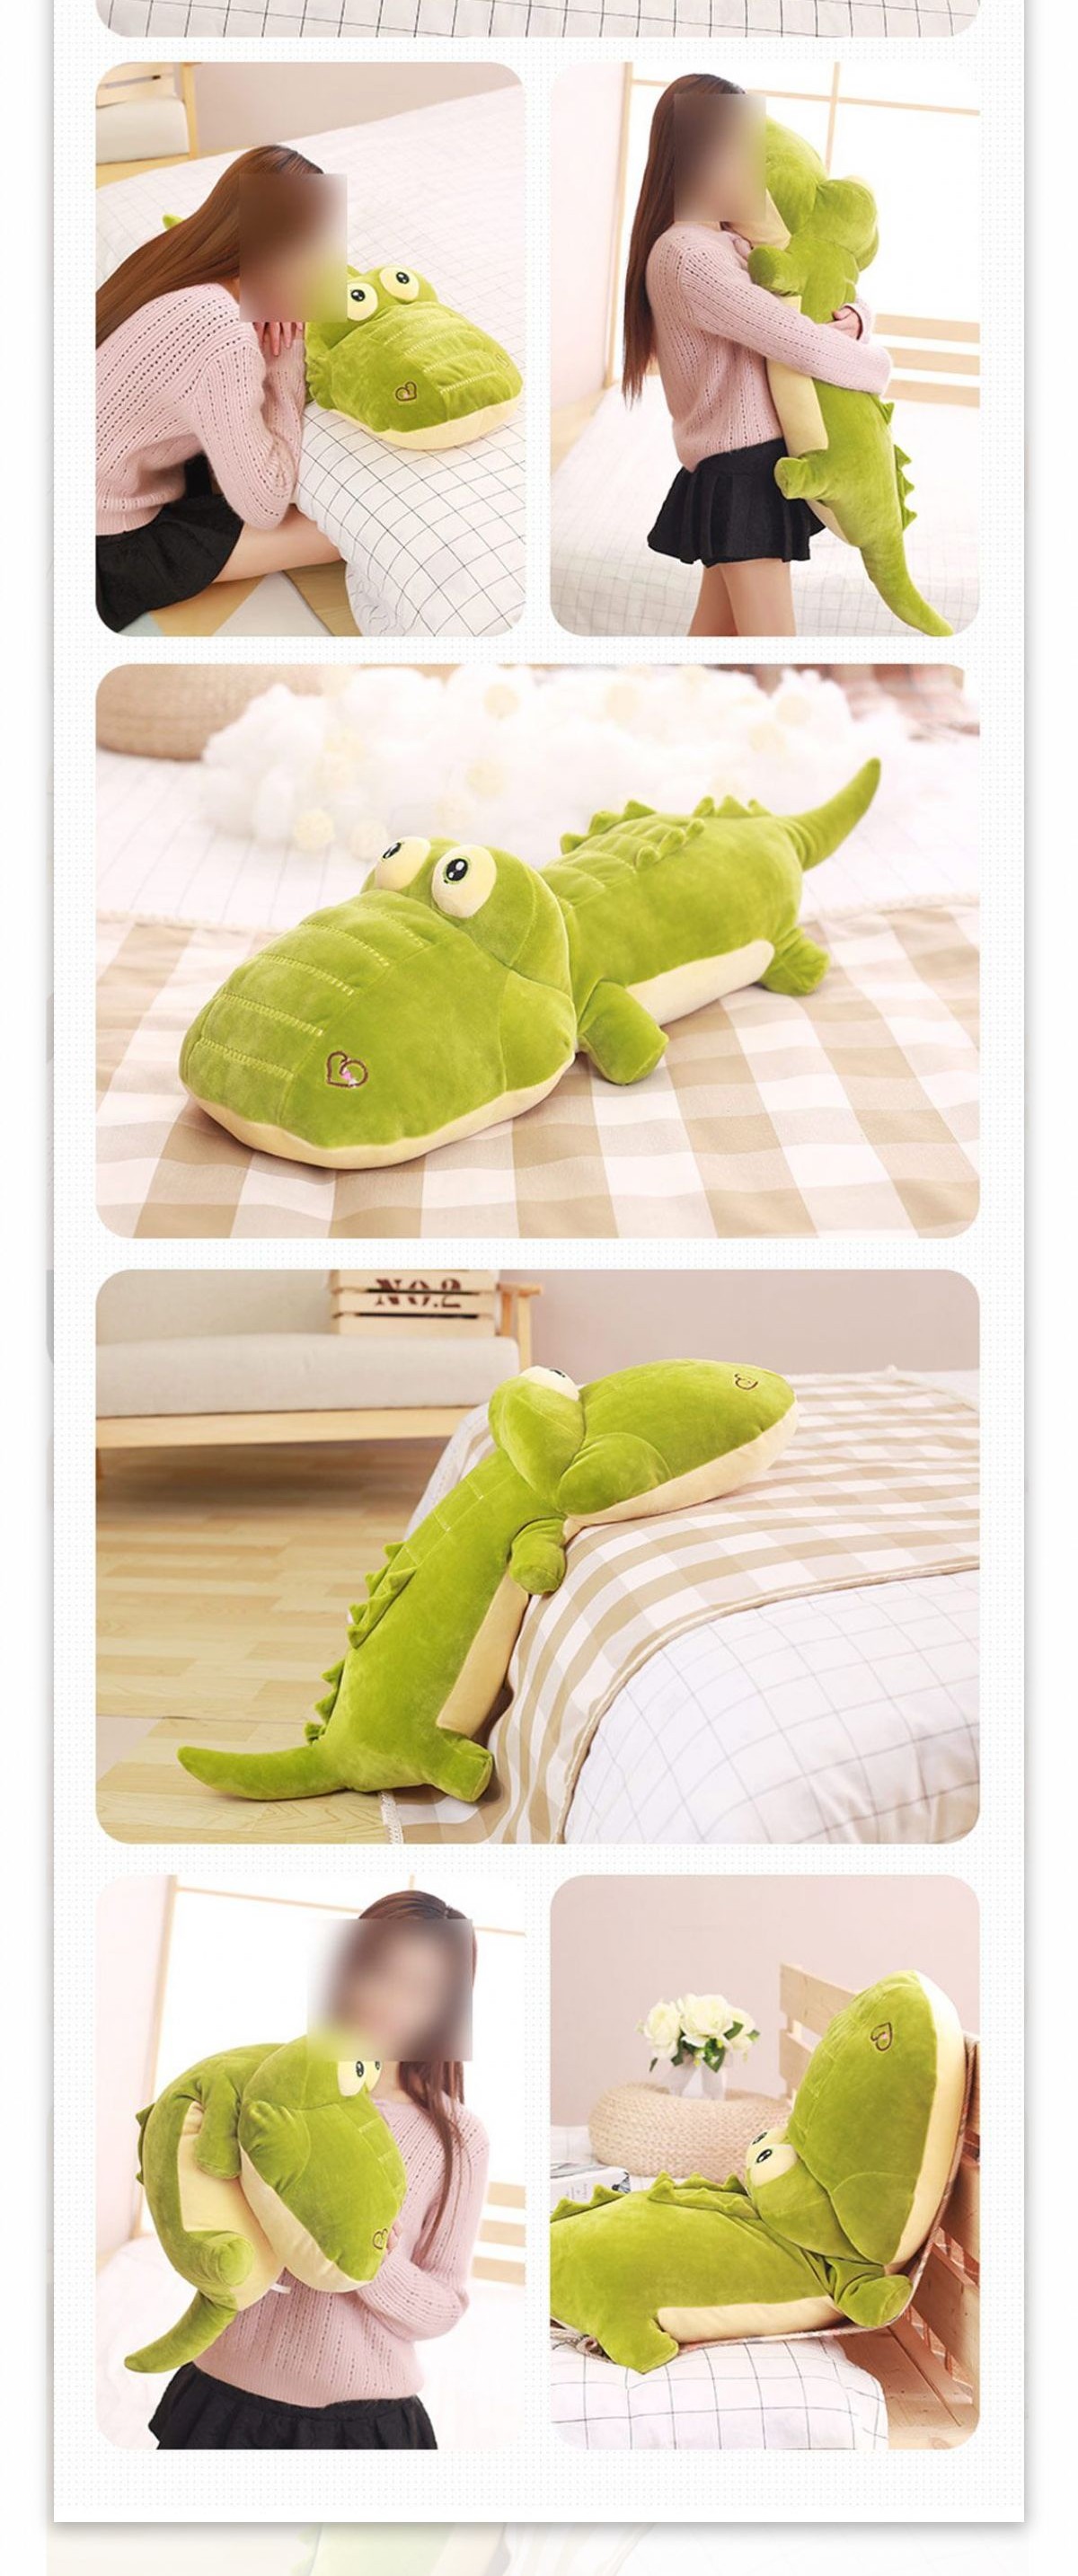 淘宝鳄鱼抱枕详情页模板